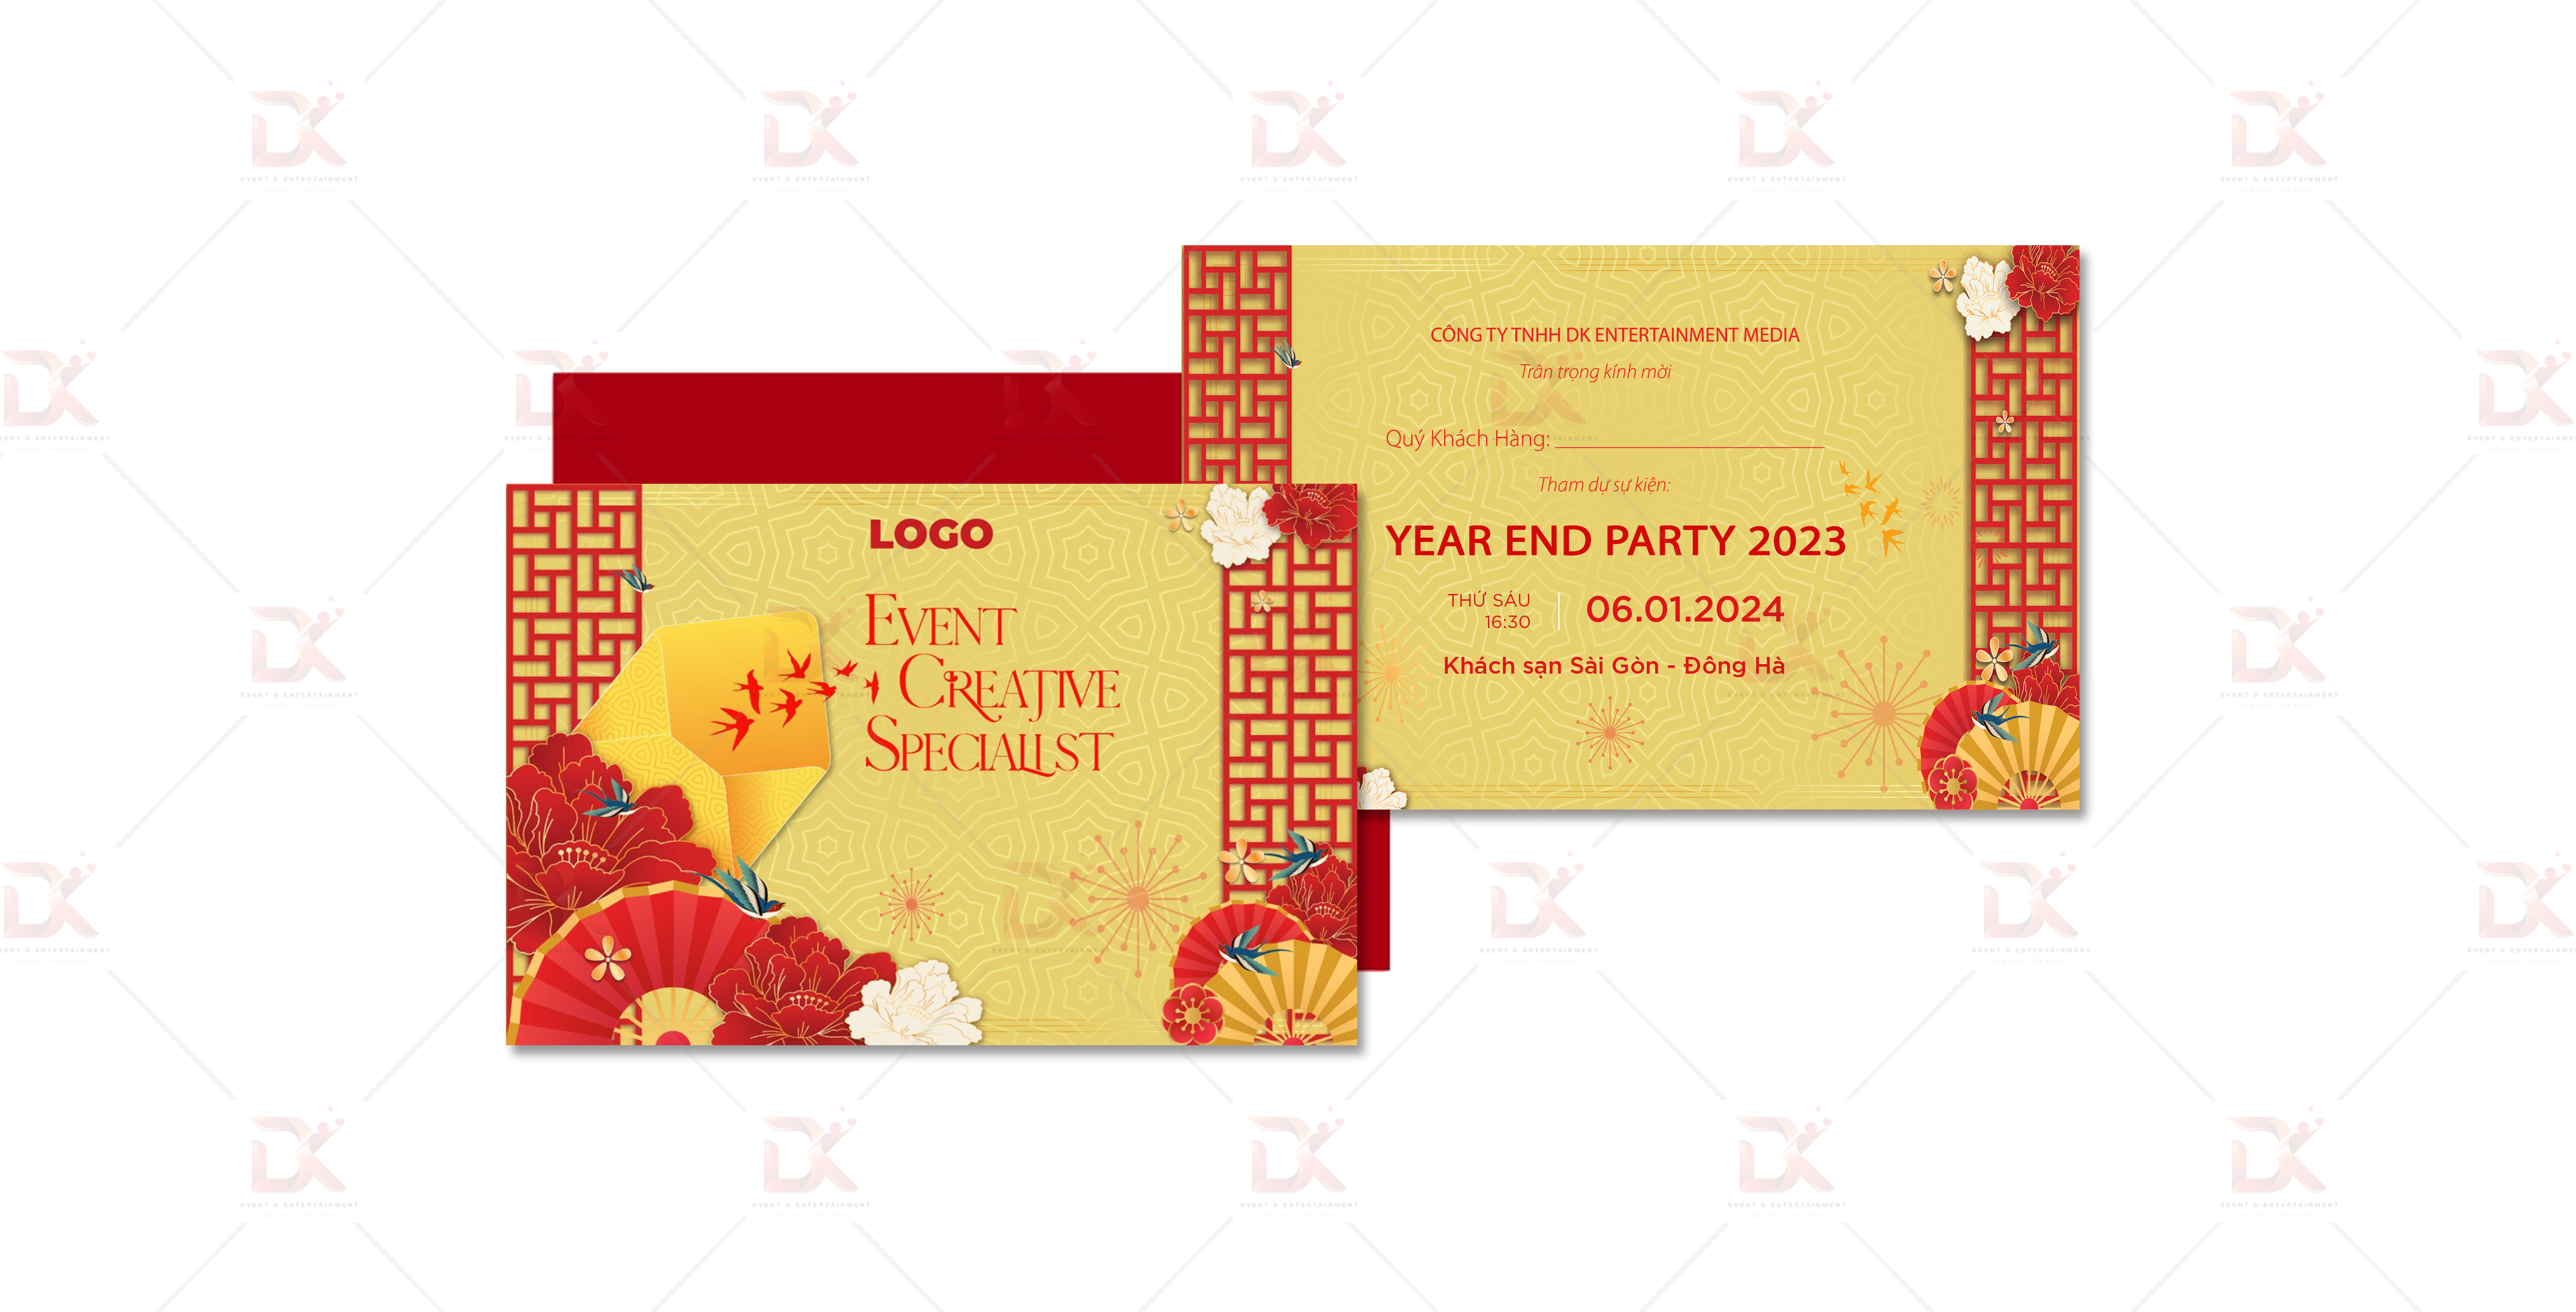 Mẫu thiết kế 2D thư mời Year End Party DK Entertainment Media 3